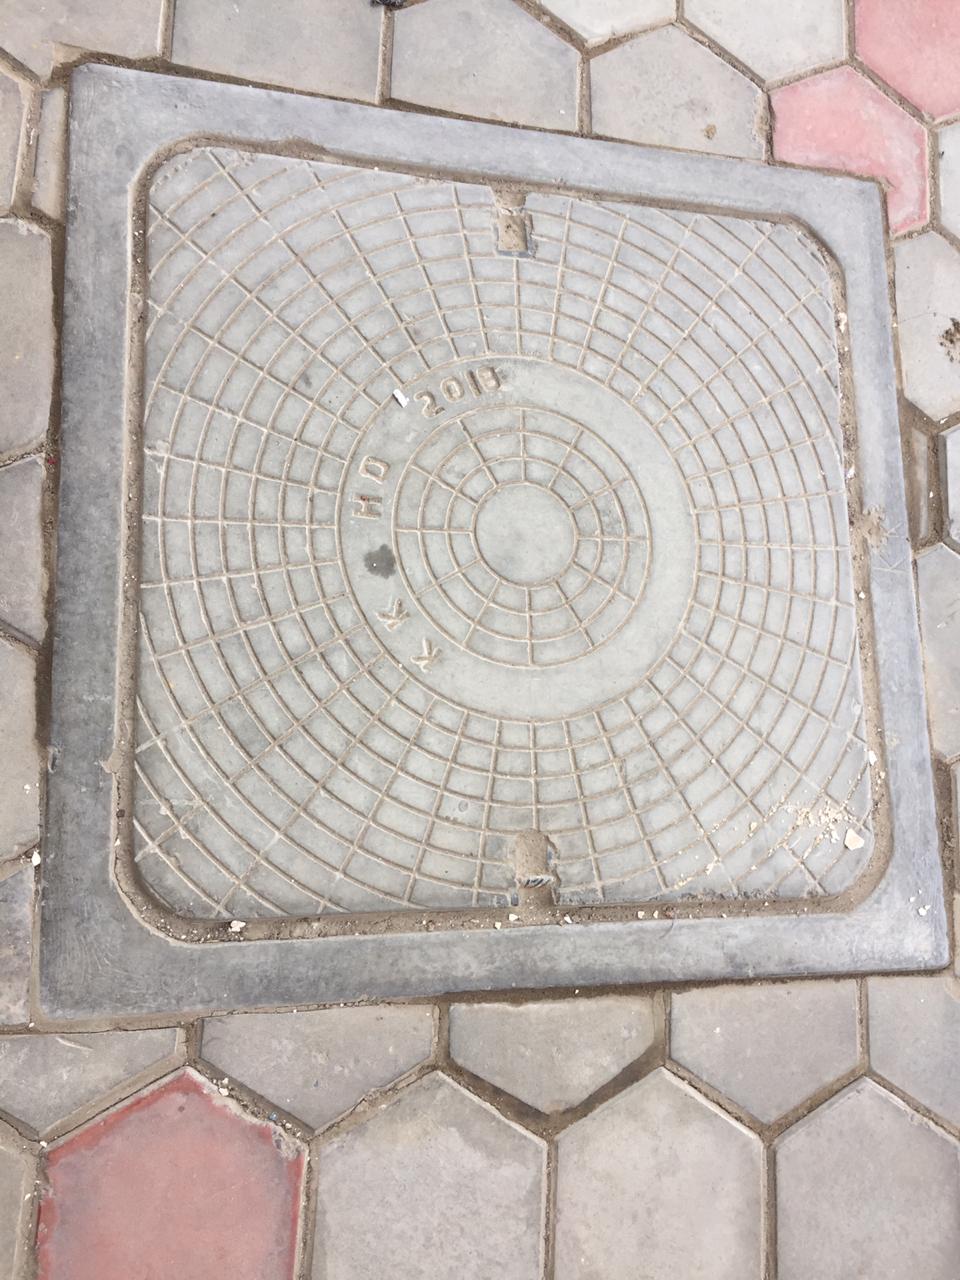 manhole cover and frame